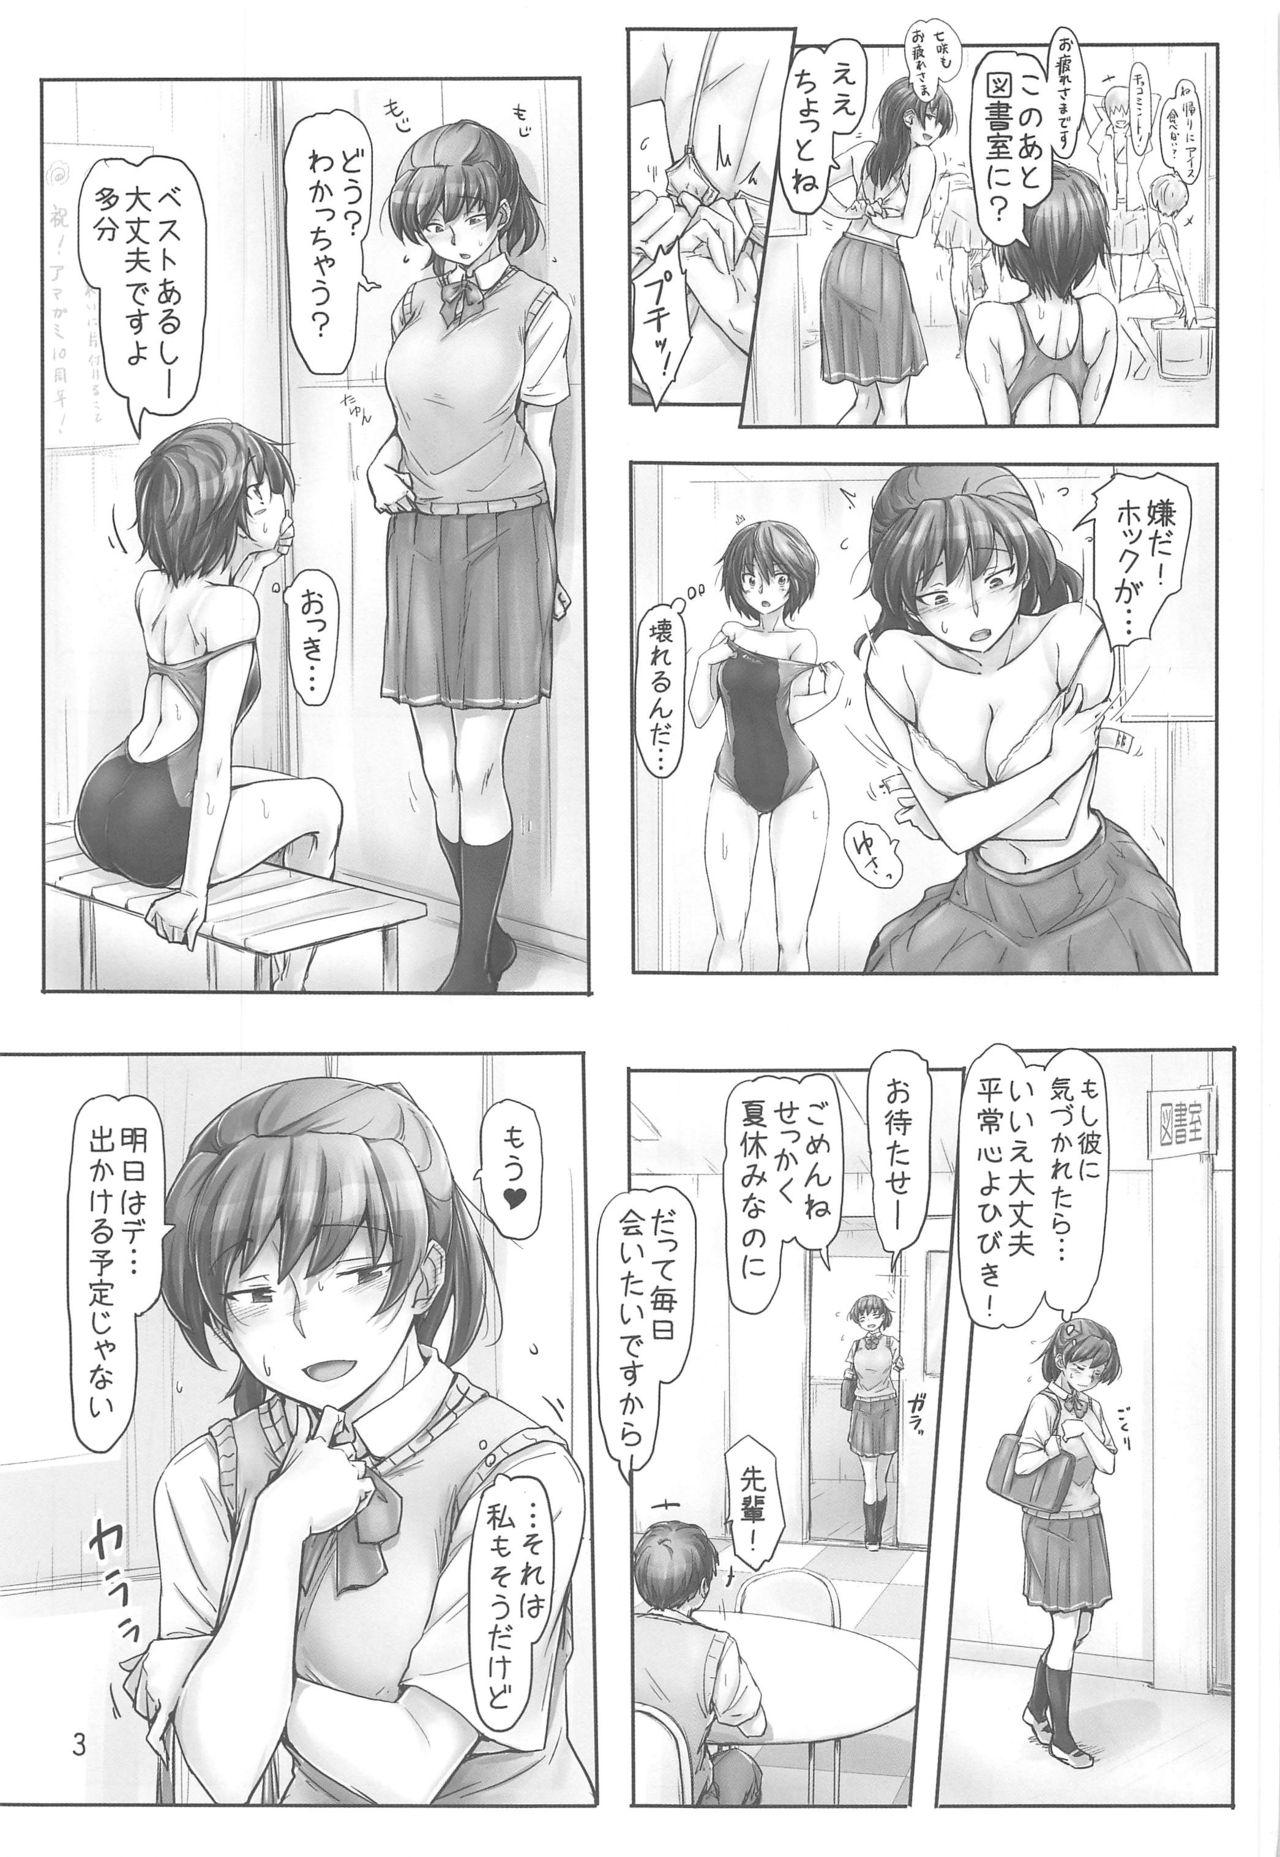 Mojada Shinpai Shita Kare ga Ie made Okutte Kurete Ureshikatta kara Date de Chotto Daitan na Hibiki-san - Amagami Three Some - Page 2